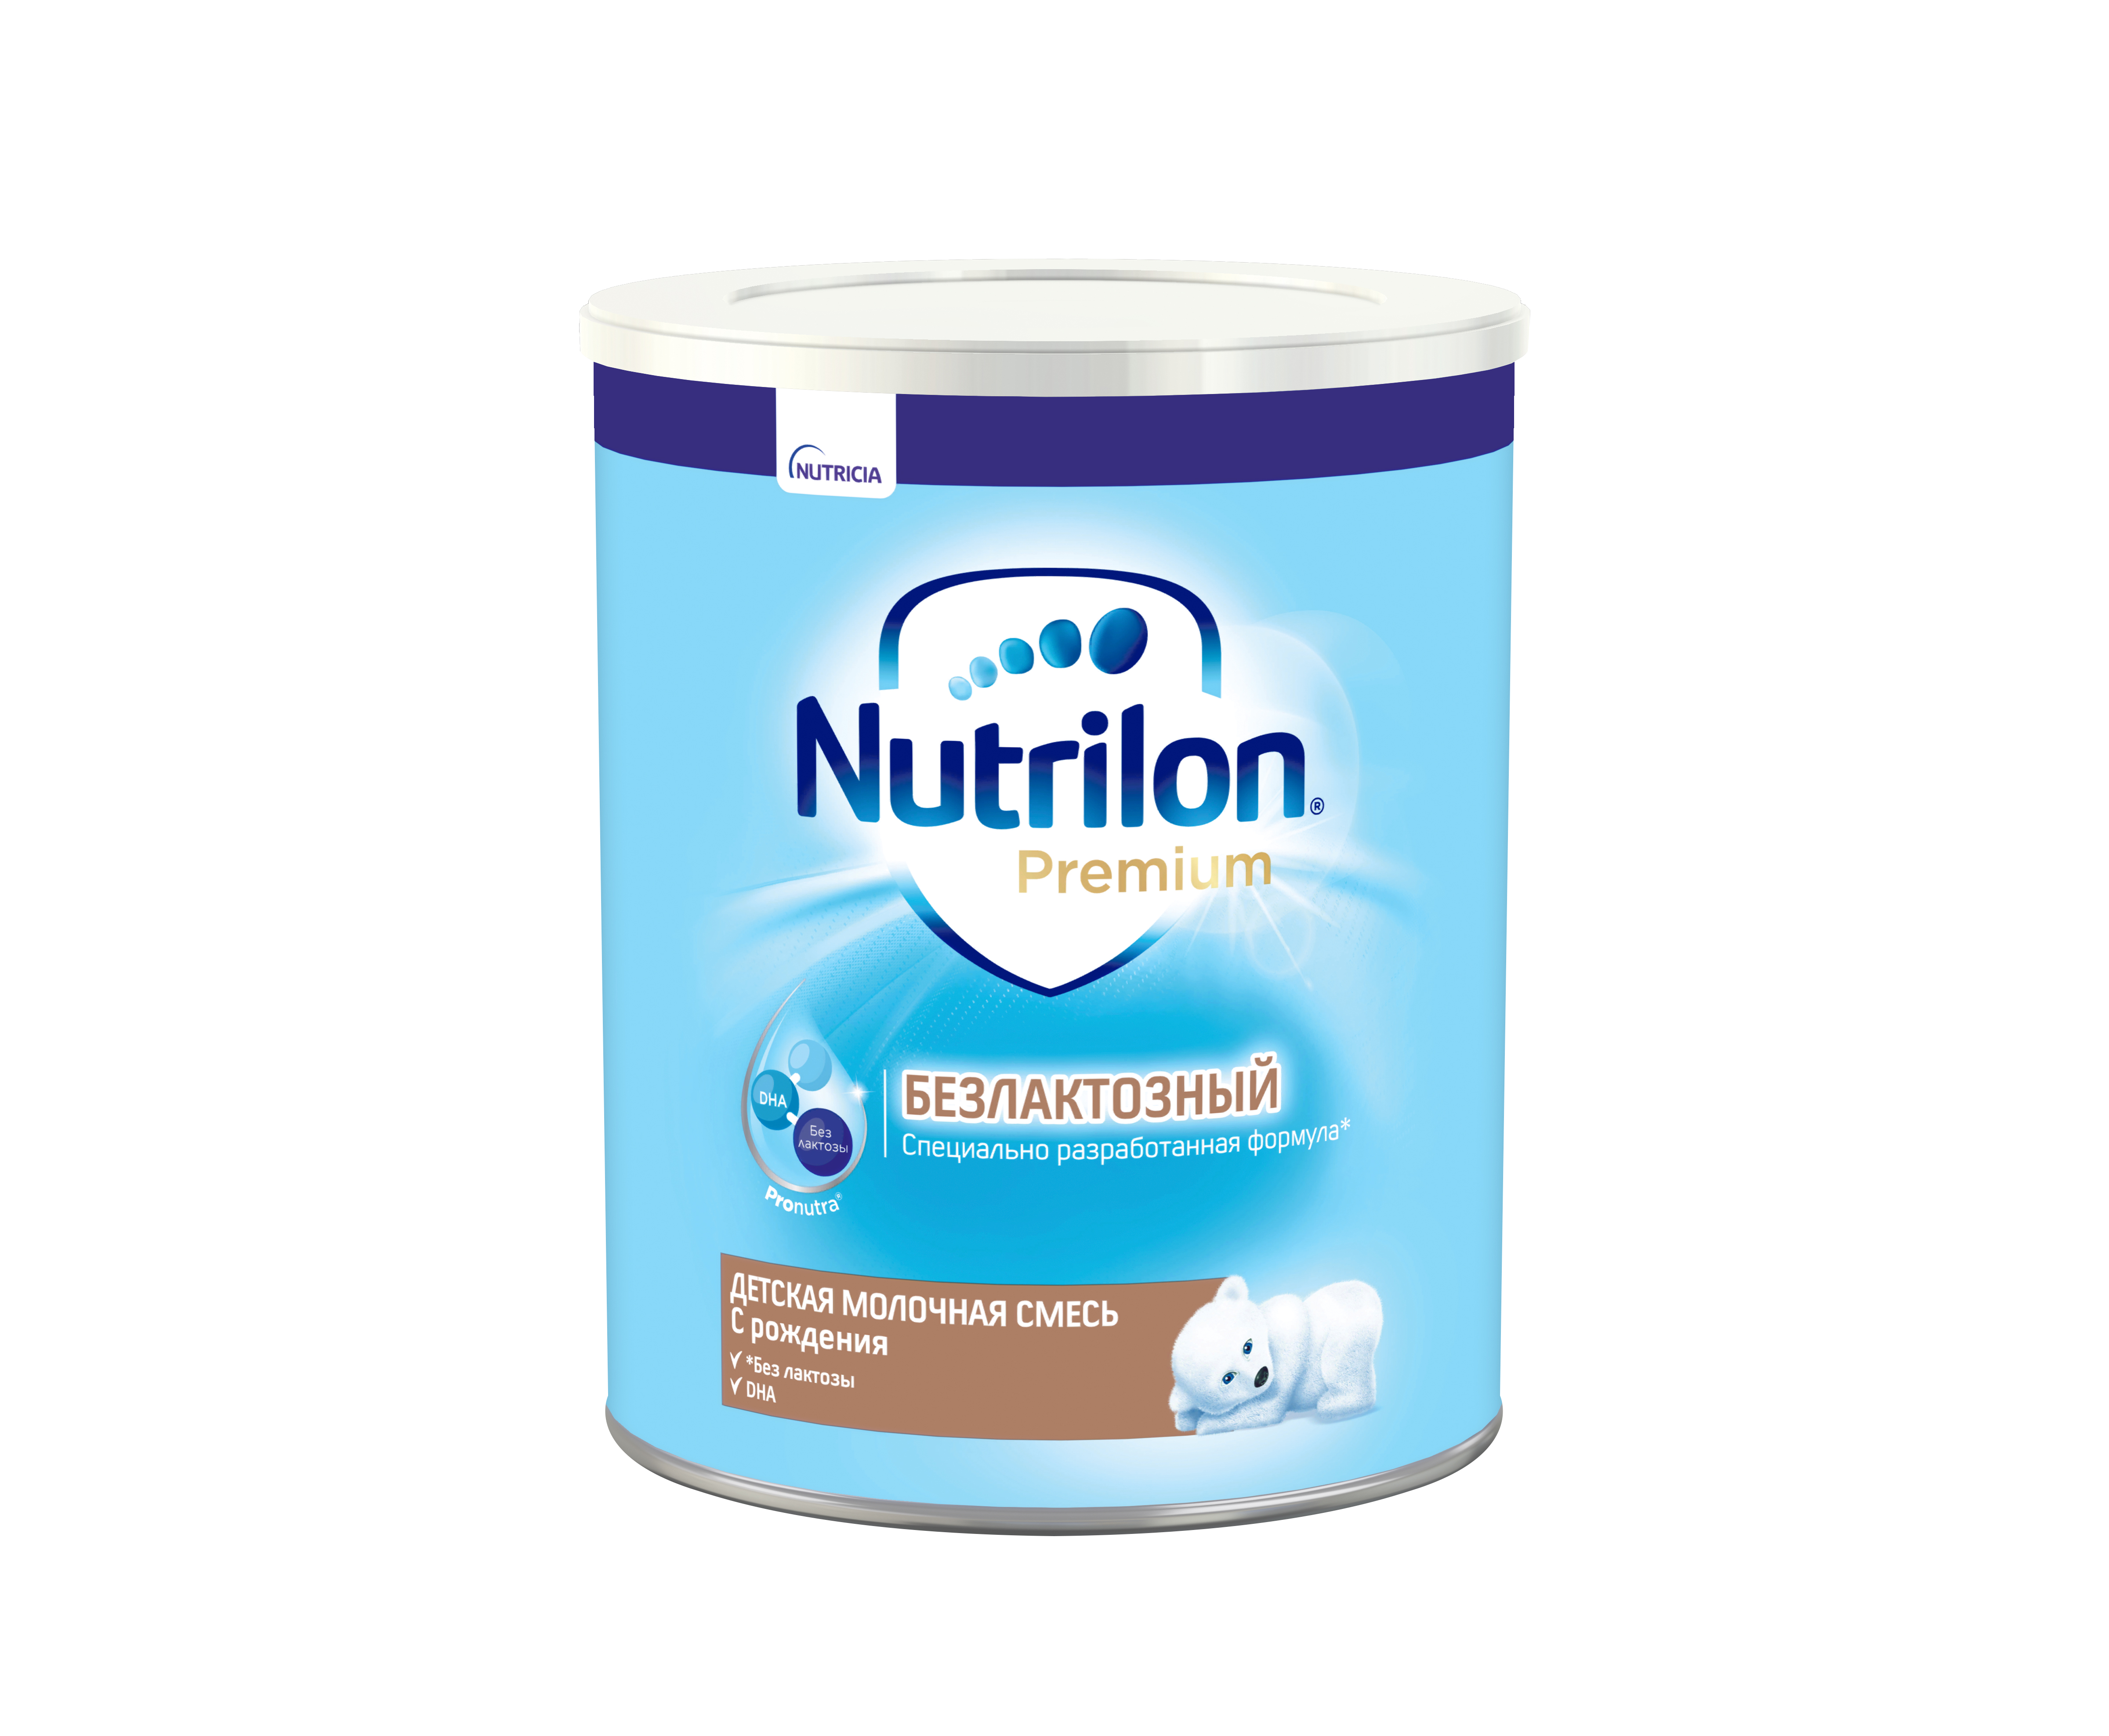 ნუტრილონი პრემიუმი ულაქტოზო / Nutrilon Premium LF